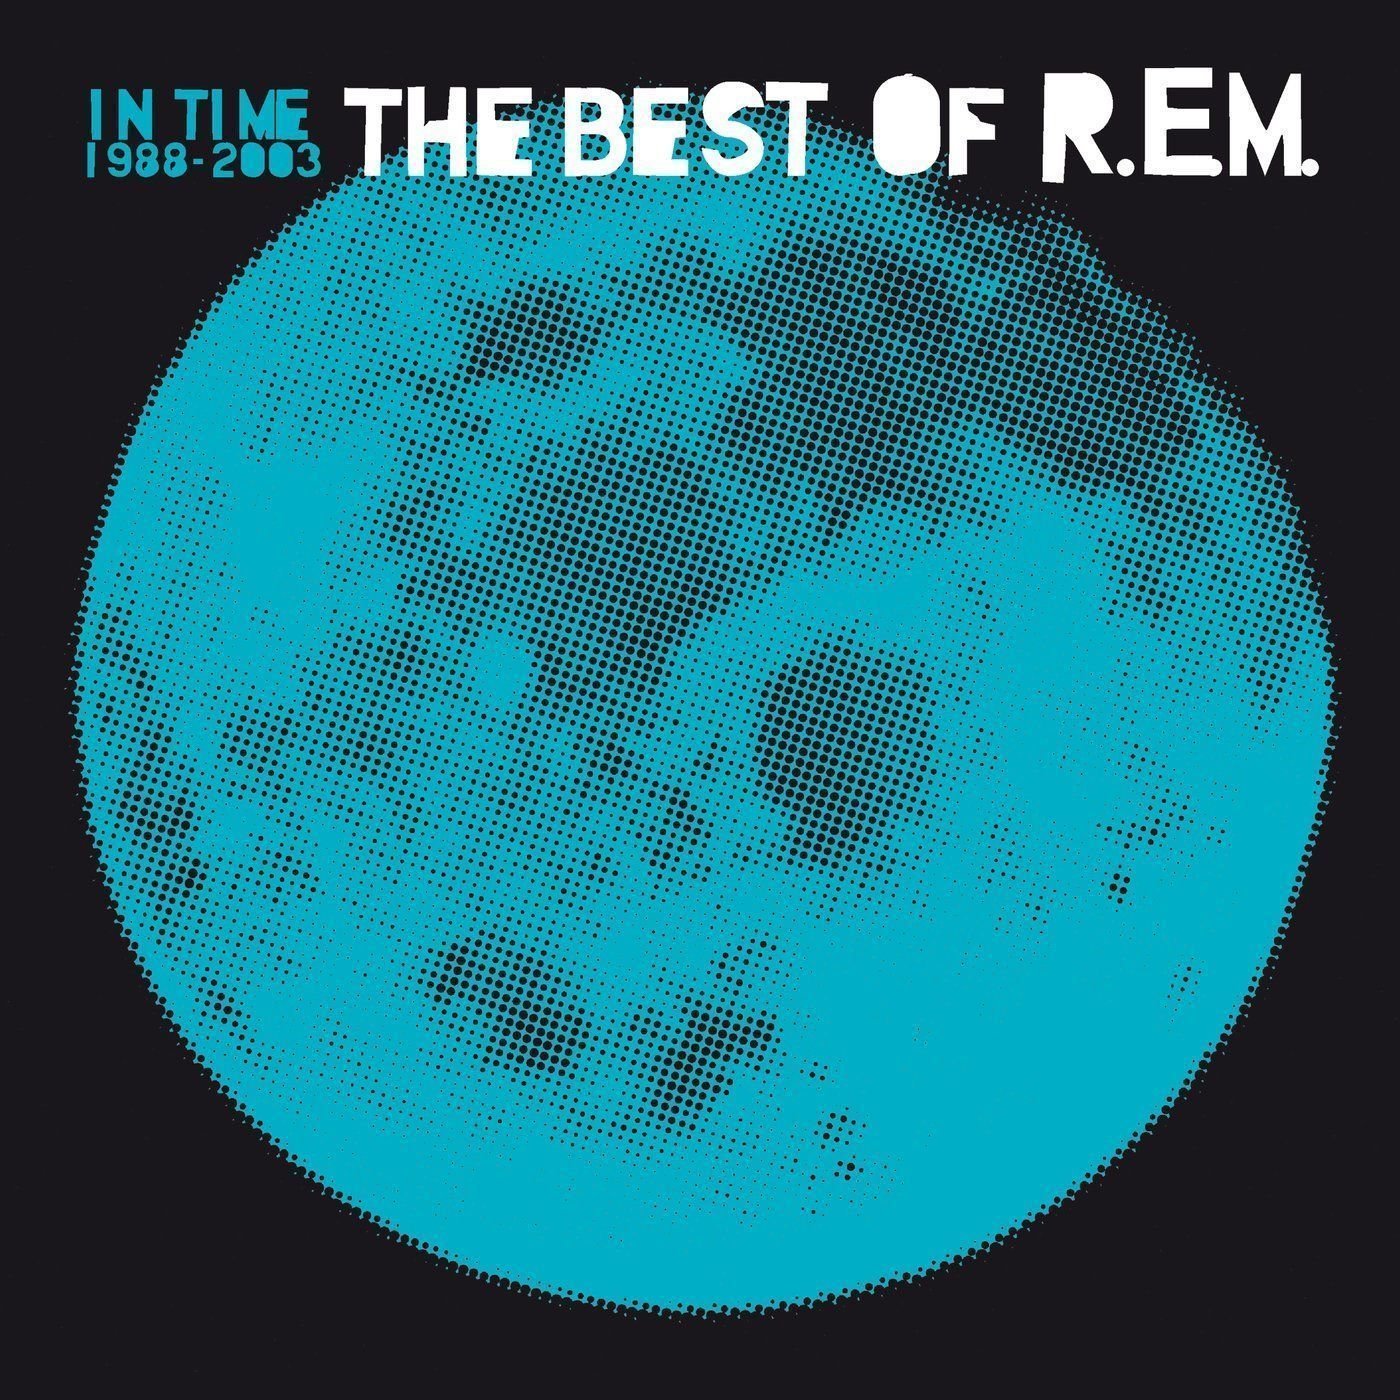 Disque vinyle R.E.M. - In Time: The Best Of R.E.M. 1988-2003 (2 LP)